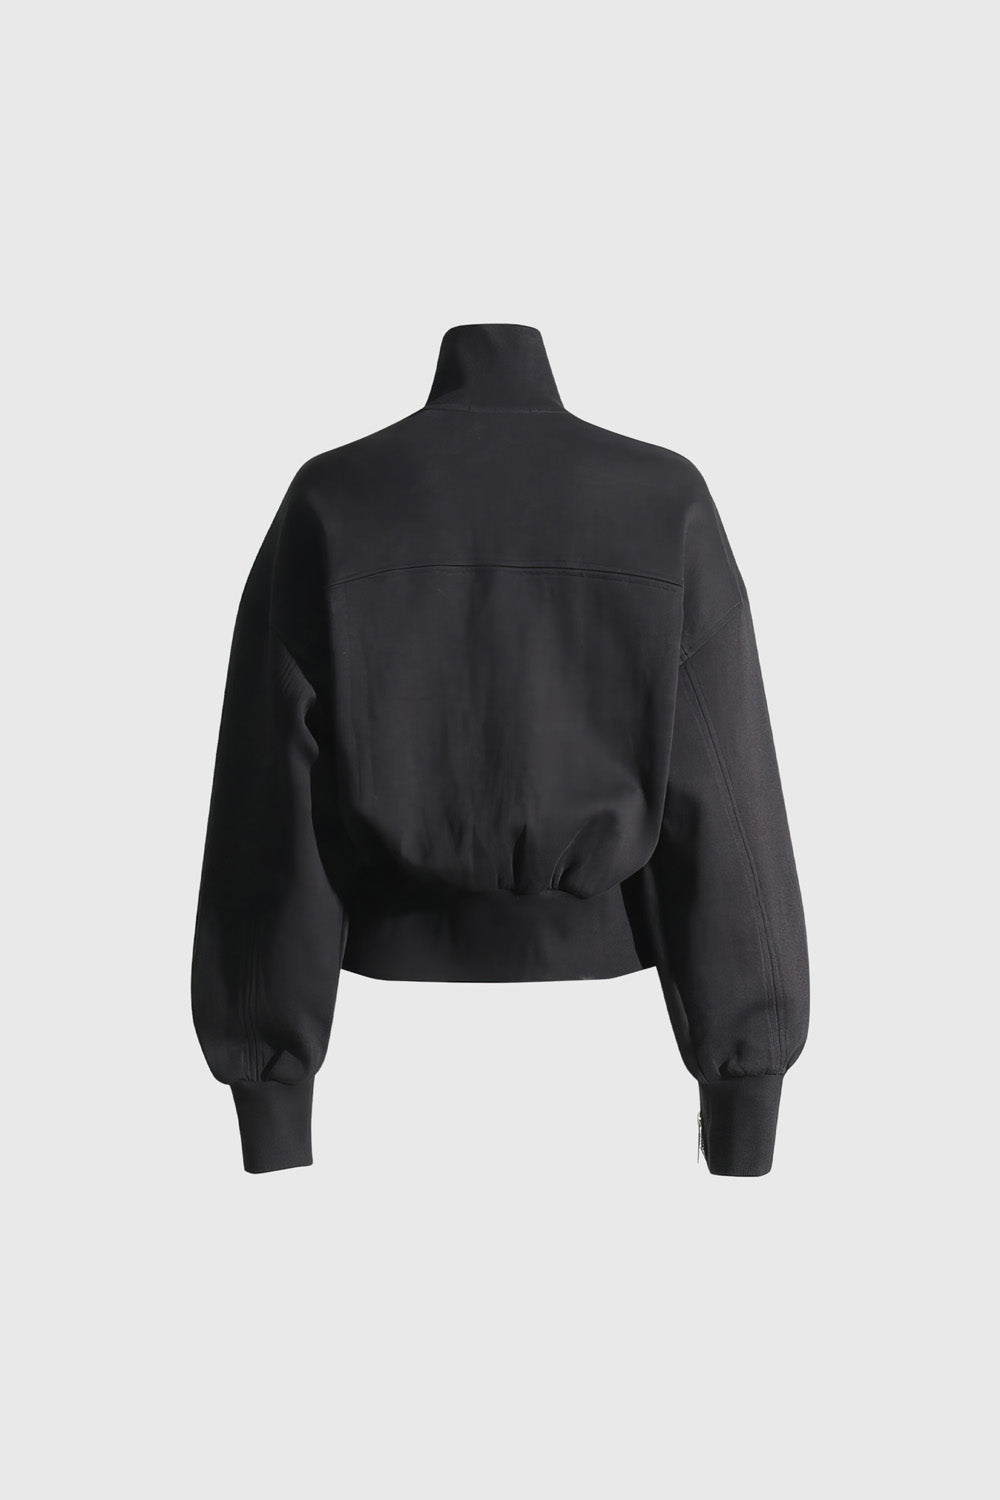 Off Shoulders Sweatshirt with Zippers - Black